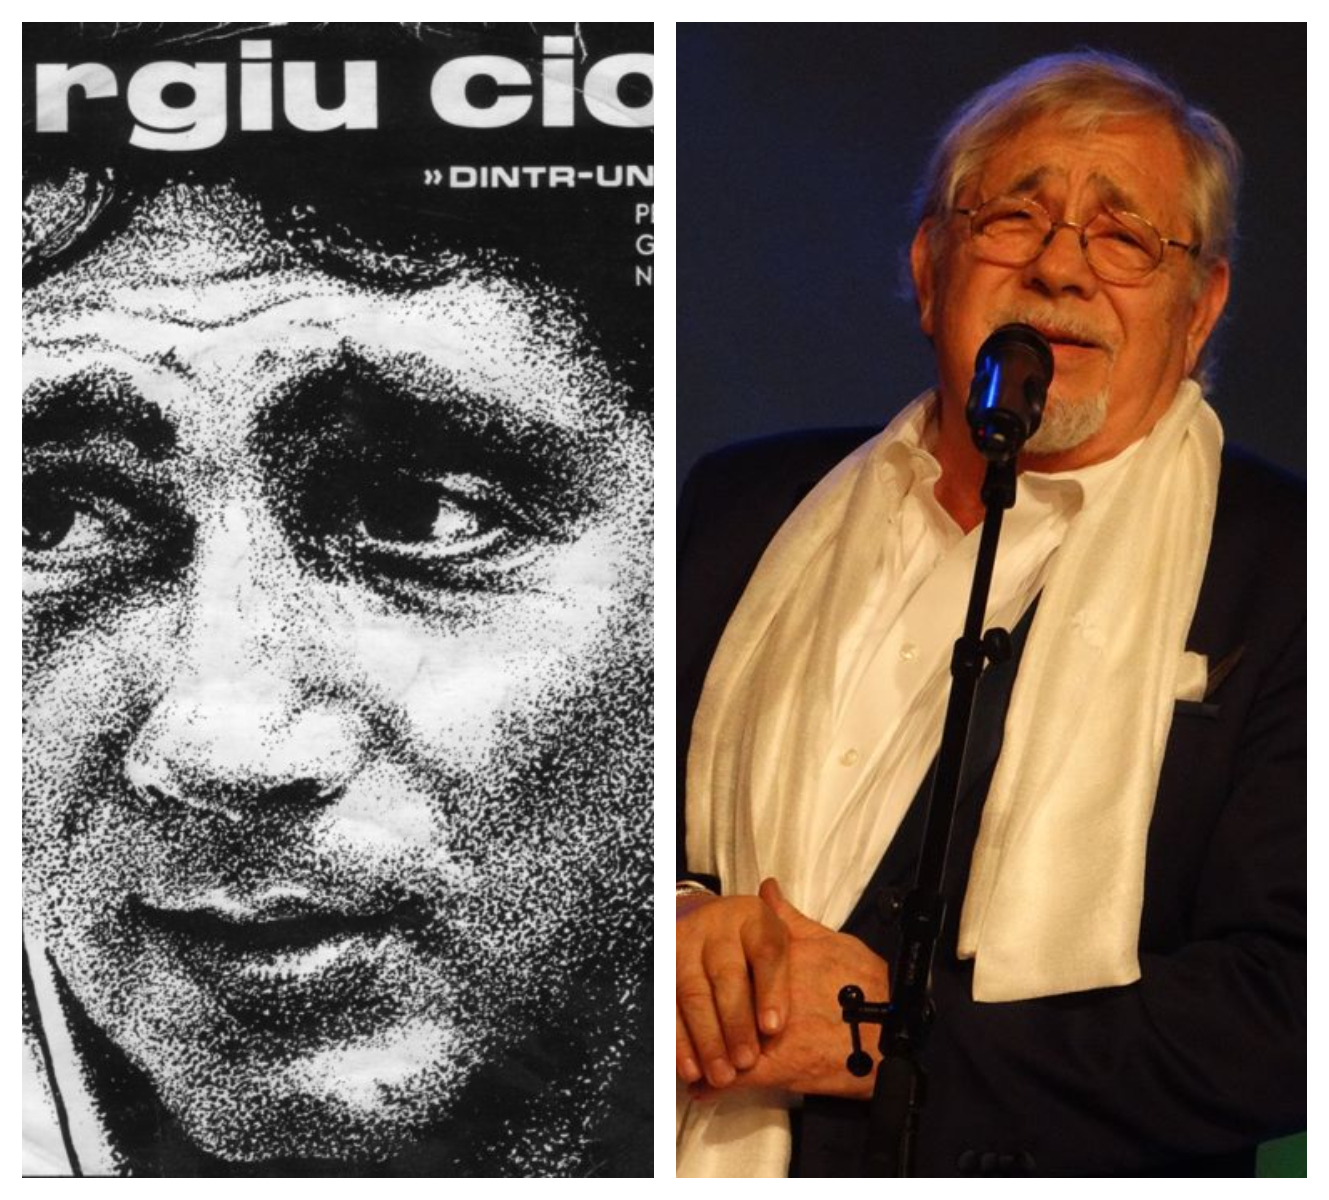 Aniversare unică în istoria muzicii românești! Sergiu Cioiu sărbătorește 82 de ani pe scenă